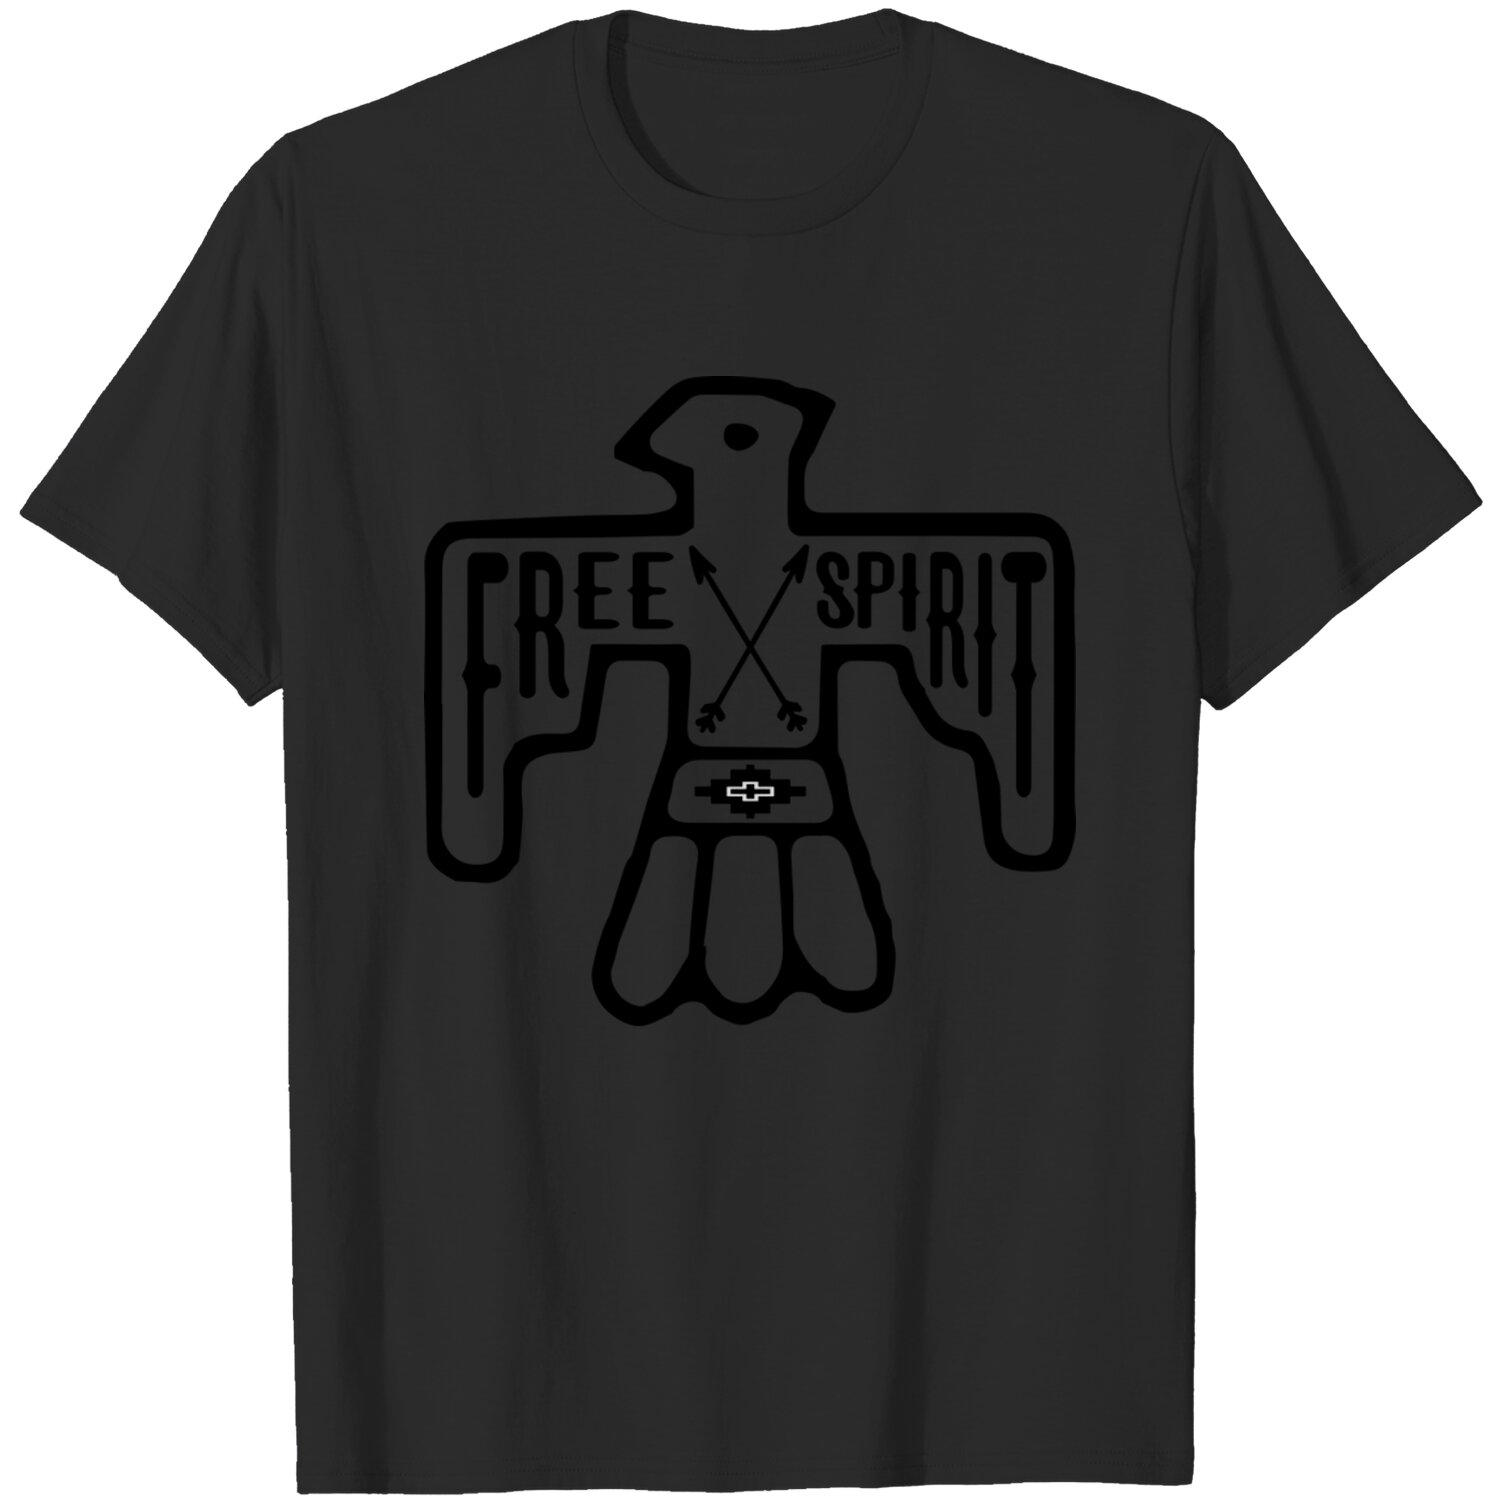 Free Spirit T Shirt